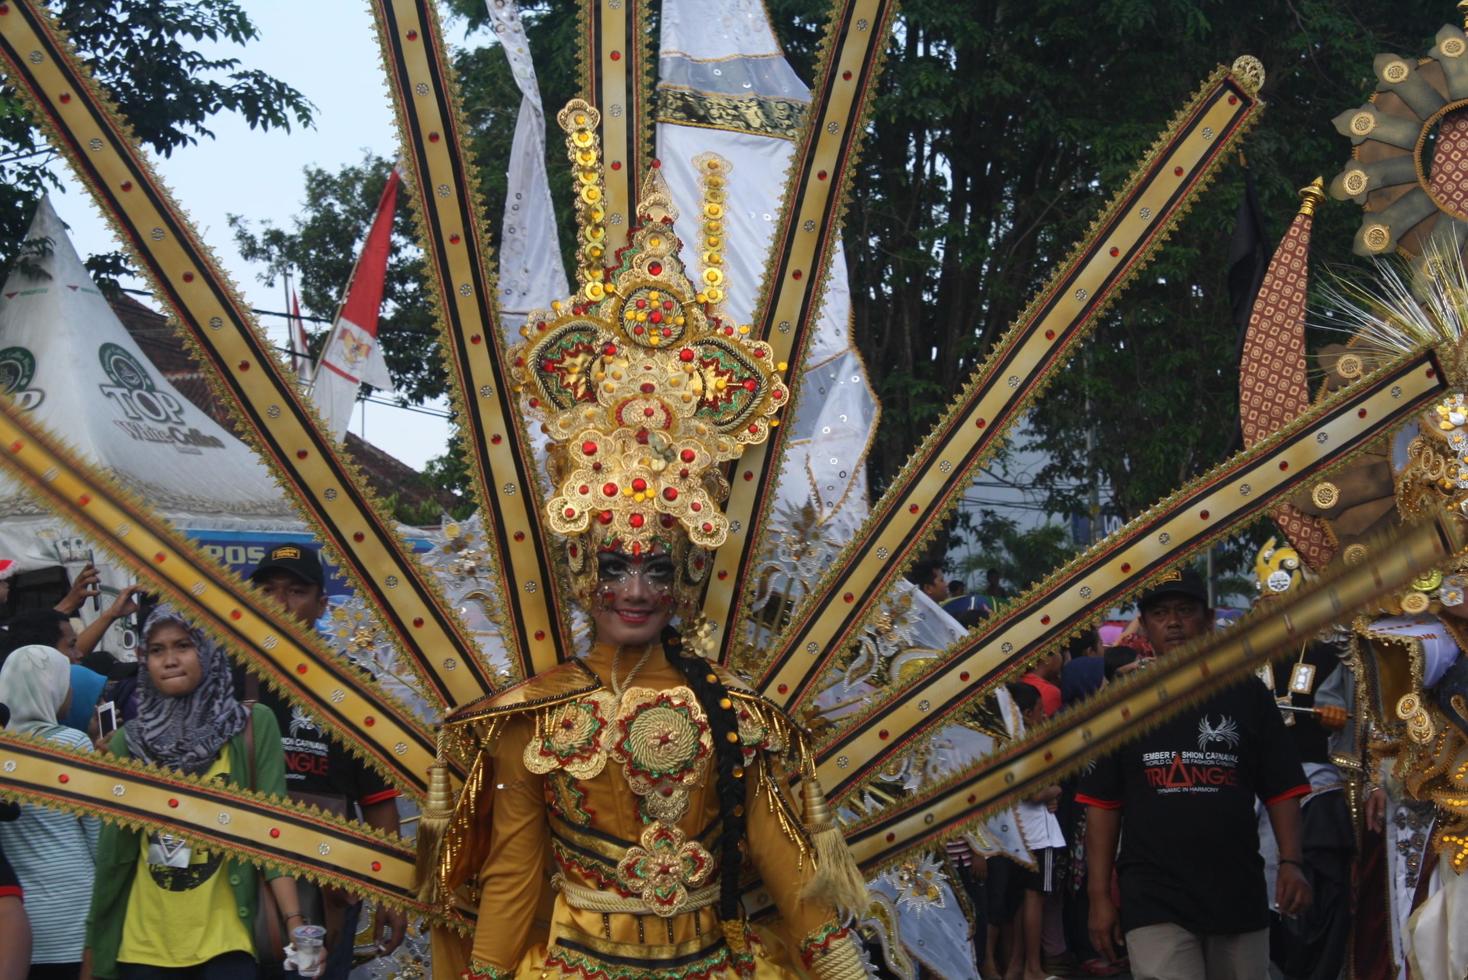 Jember, jawa timur, indonesien - augusti 25, 2015 jember mode karneval deltagarna är ger deras bäst prestanda med deras kostymer och uttryck under de händelse, selektiv fokus. foto